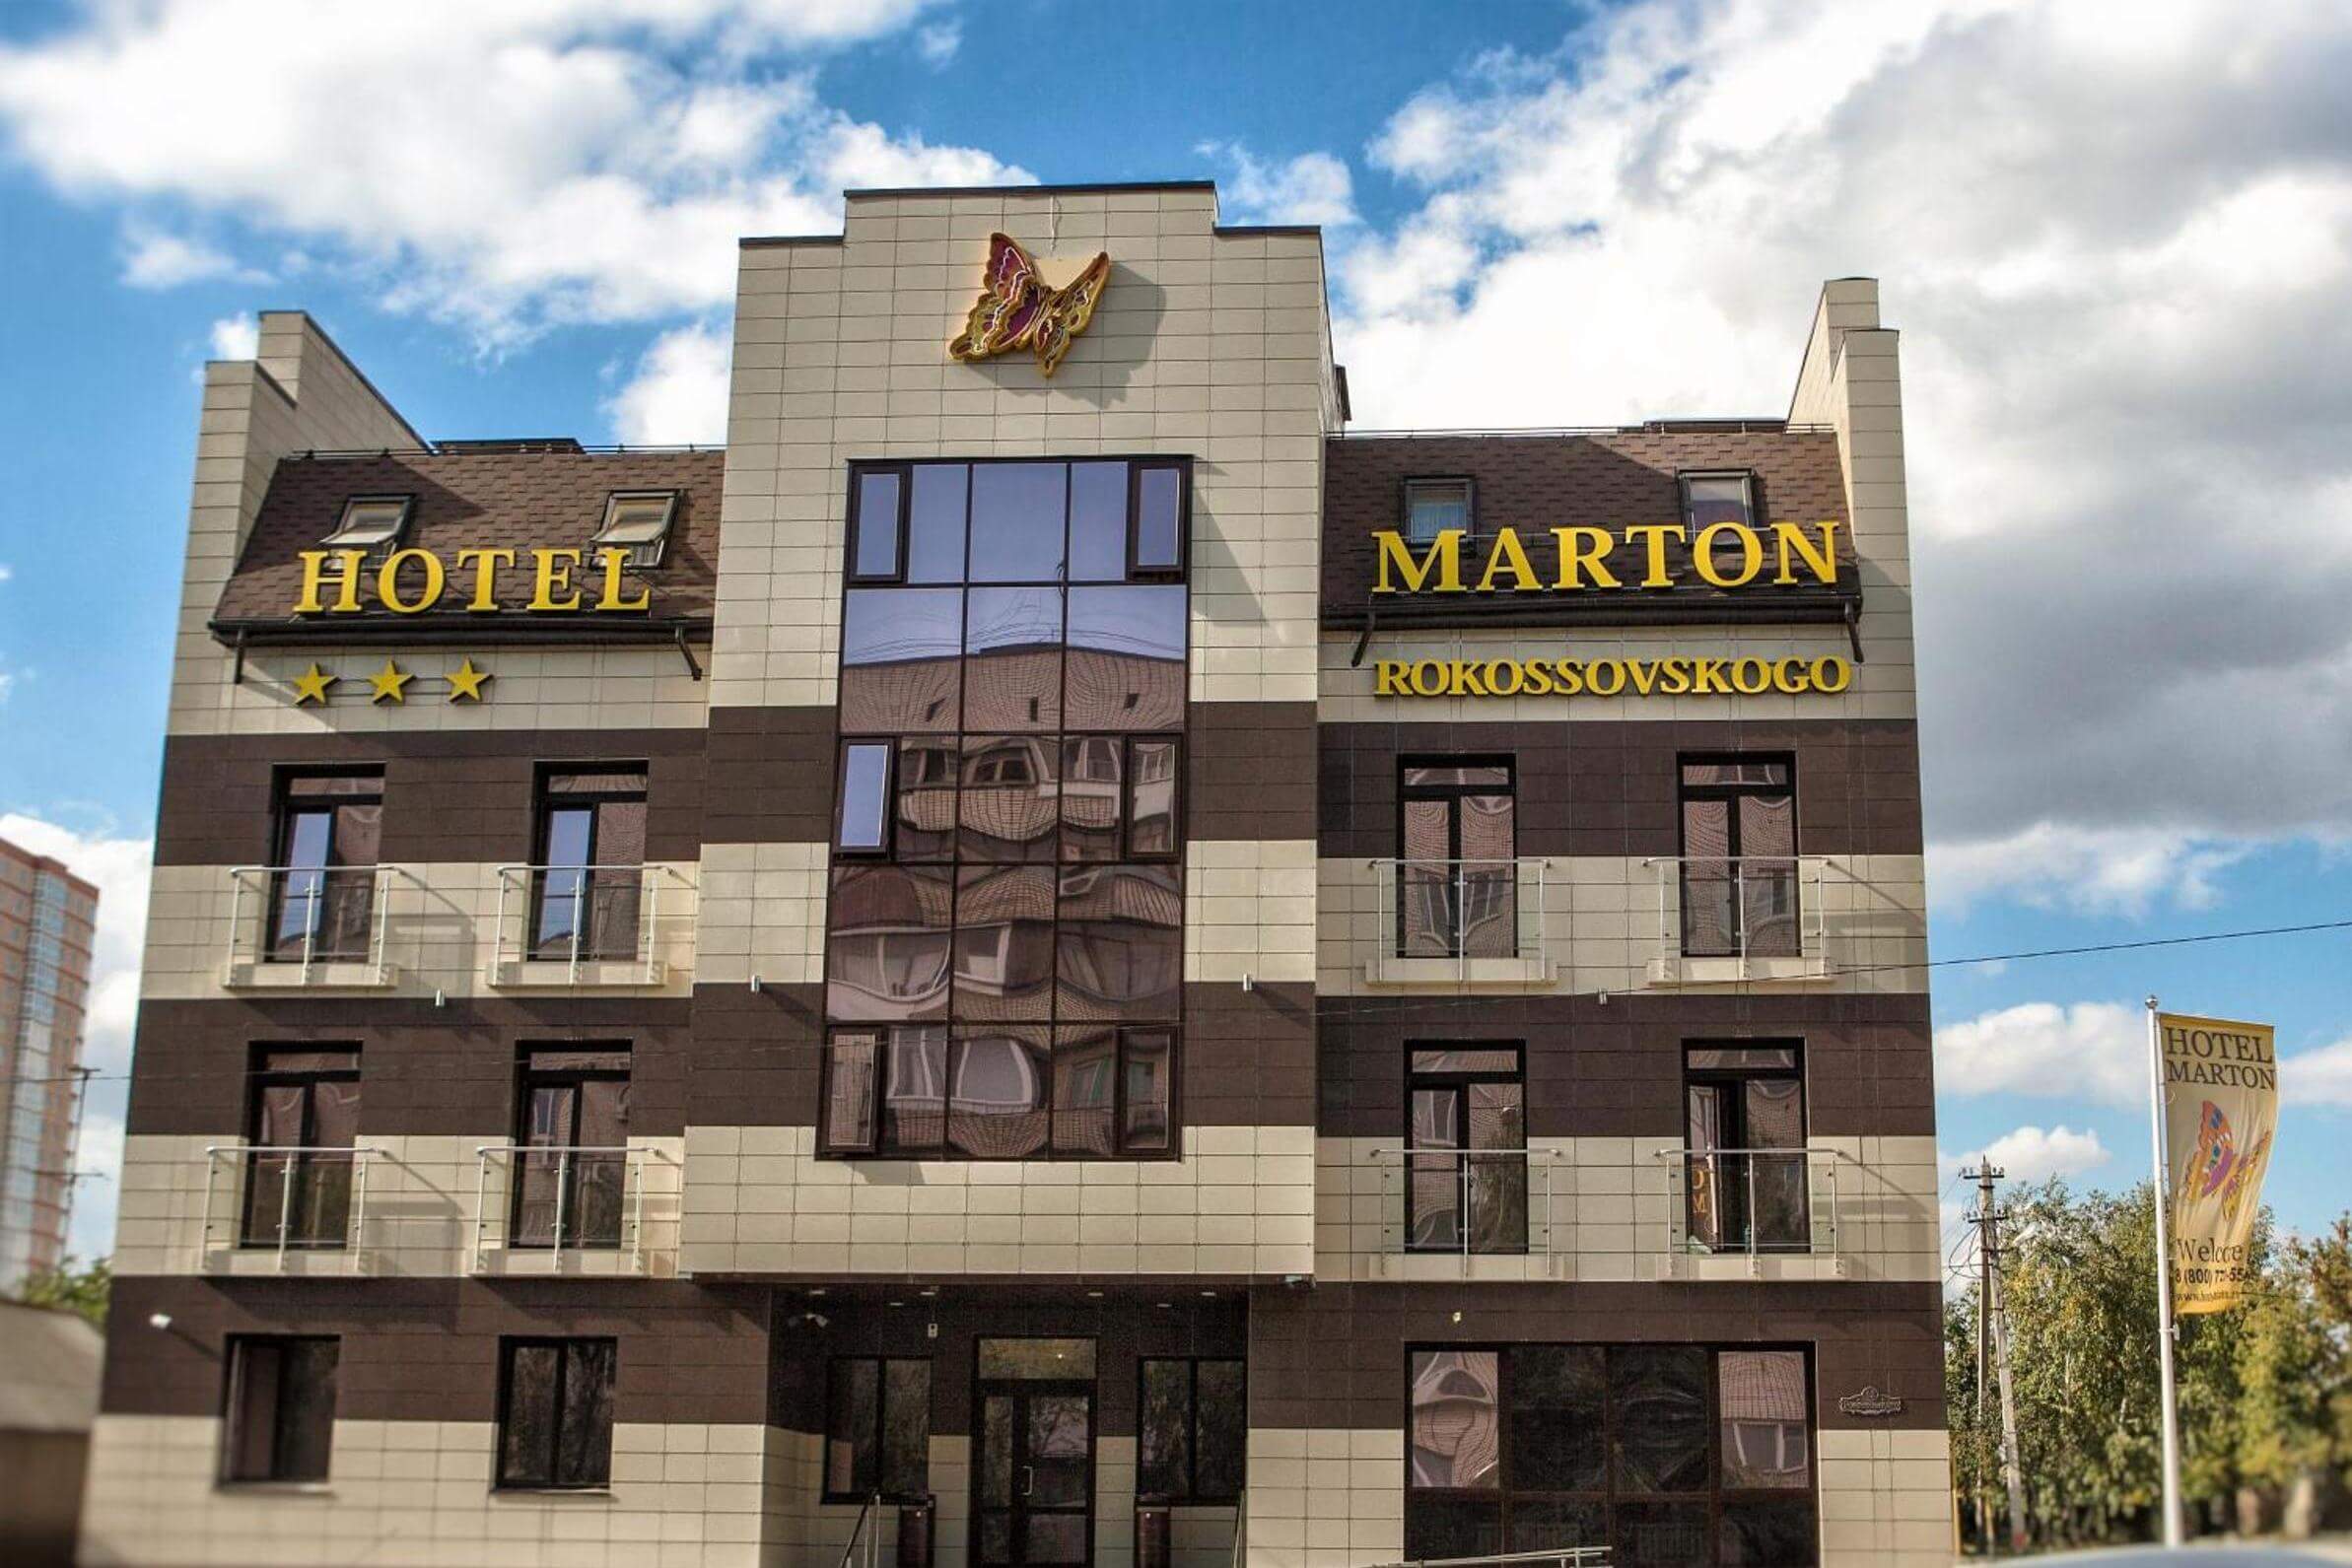 Мартон Рокоссовского. Фасад отеля - серые и коричневые стеновые панели.